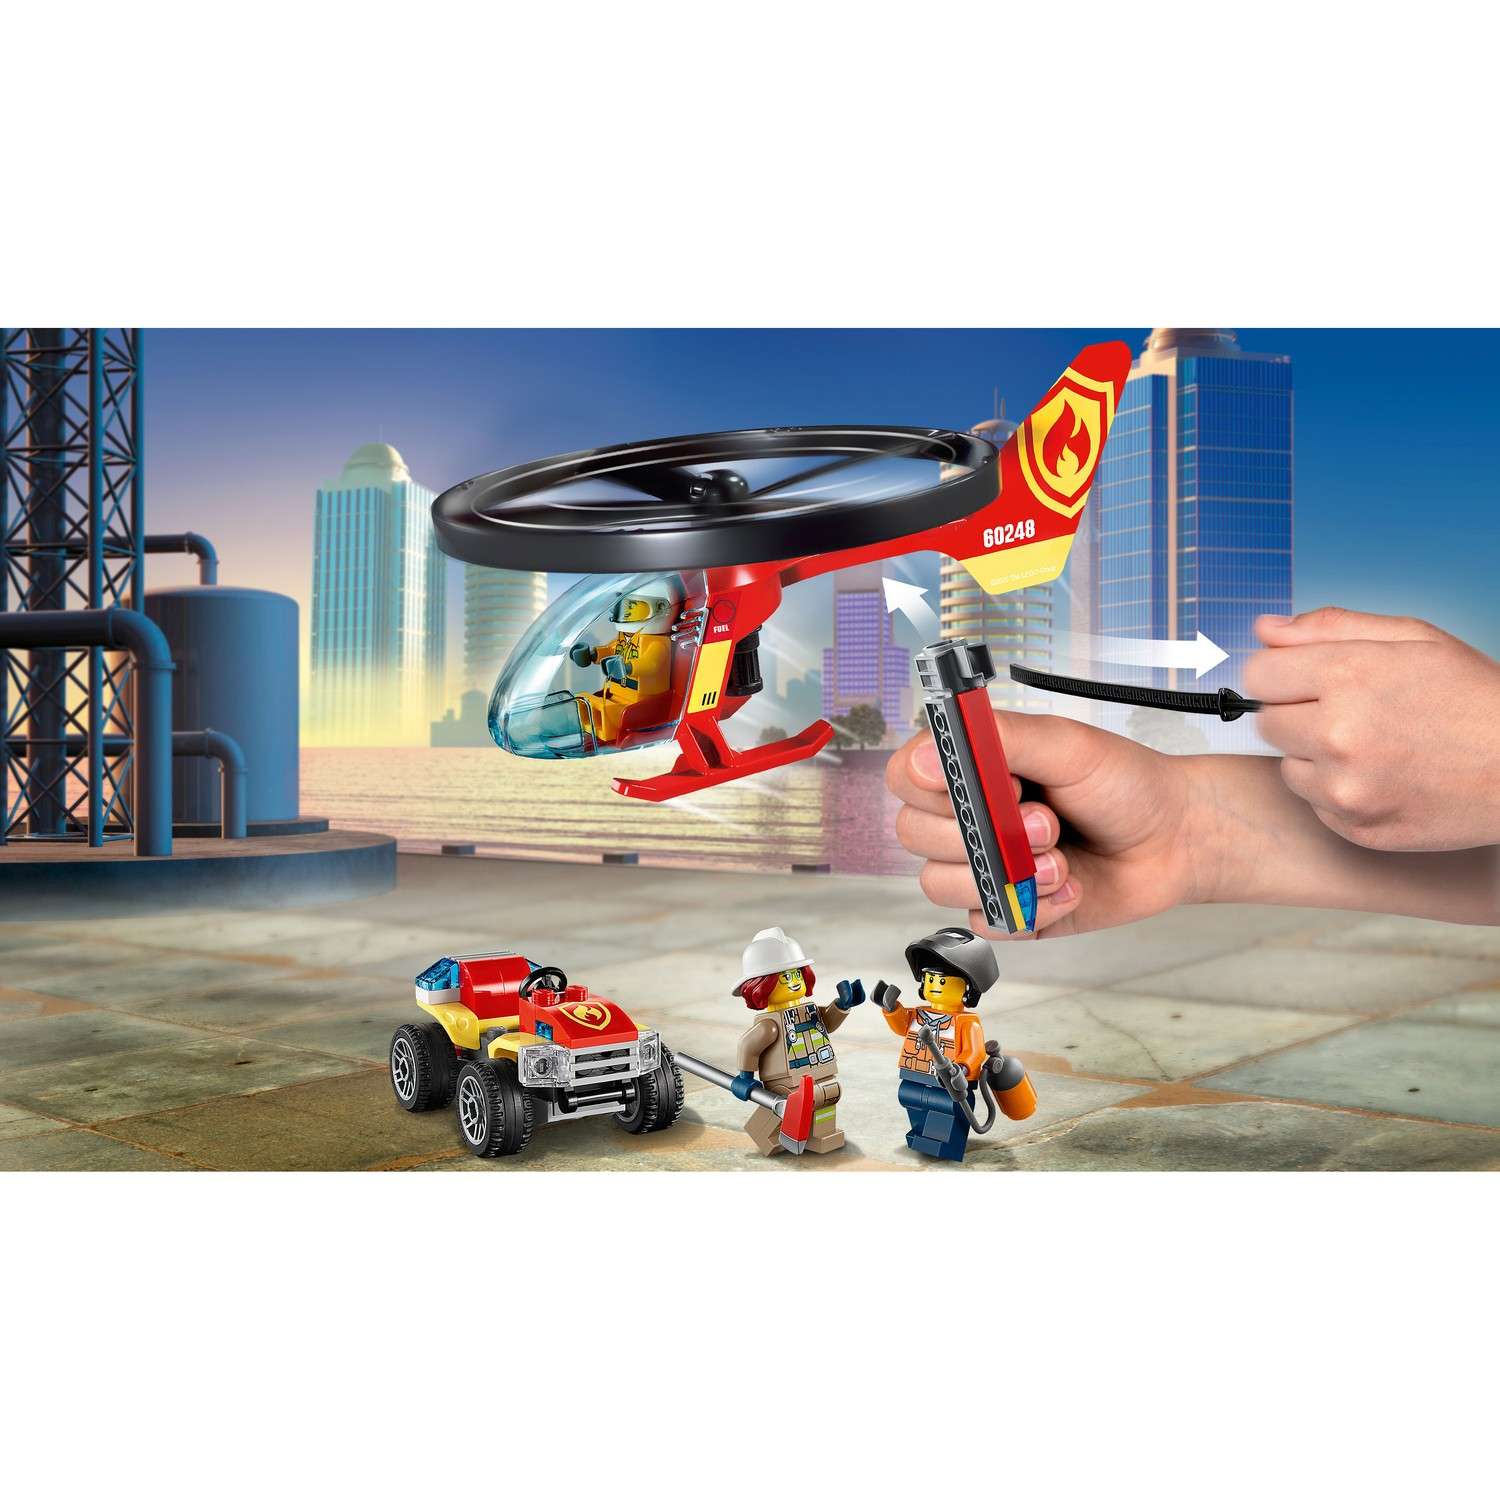 Конструктор LEGO City Fire Пожарный спасательный вертолет 60248 - фото 16